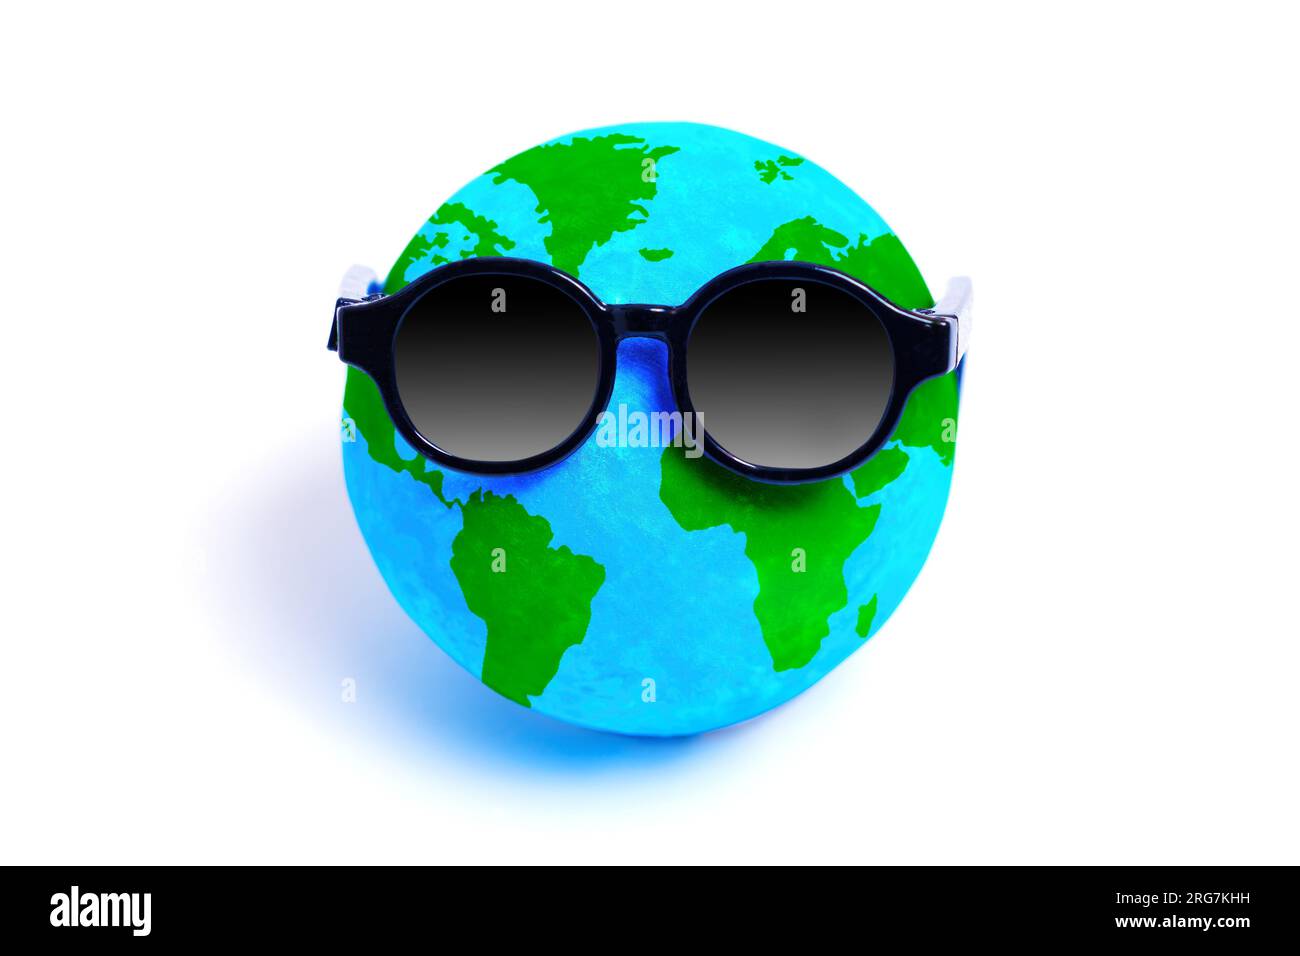 Winziger Globus mit stilvoller Sonnenbrille, der ein Gefühl von Abenteuer und globaler Entdeckungsreise symbolisiert. Reise-, Urlaubs- und Sommerdesigns, die sich auf die Kontra beziehen Stockfoto